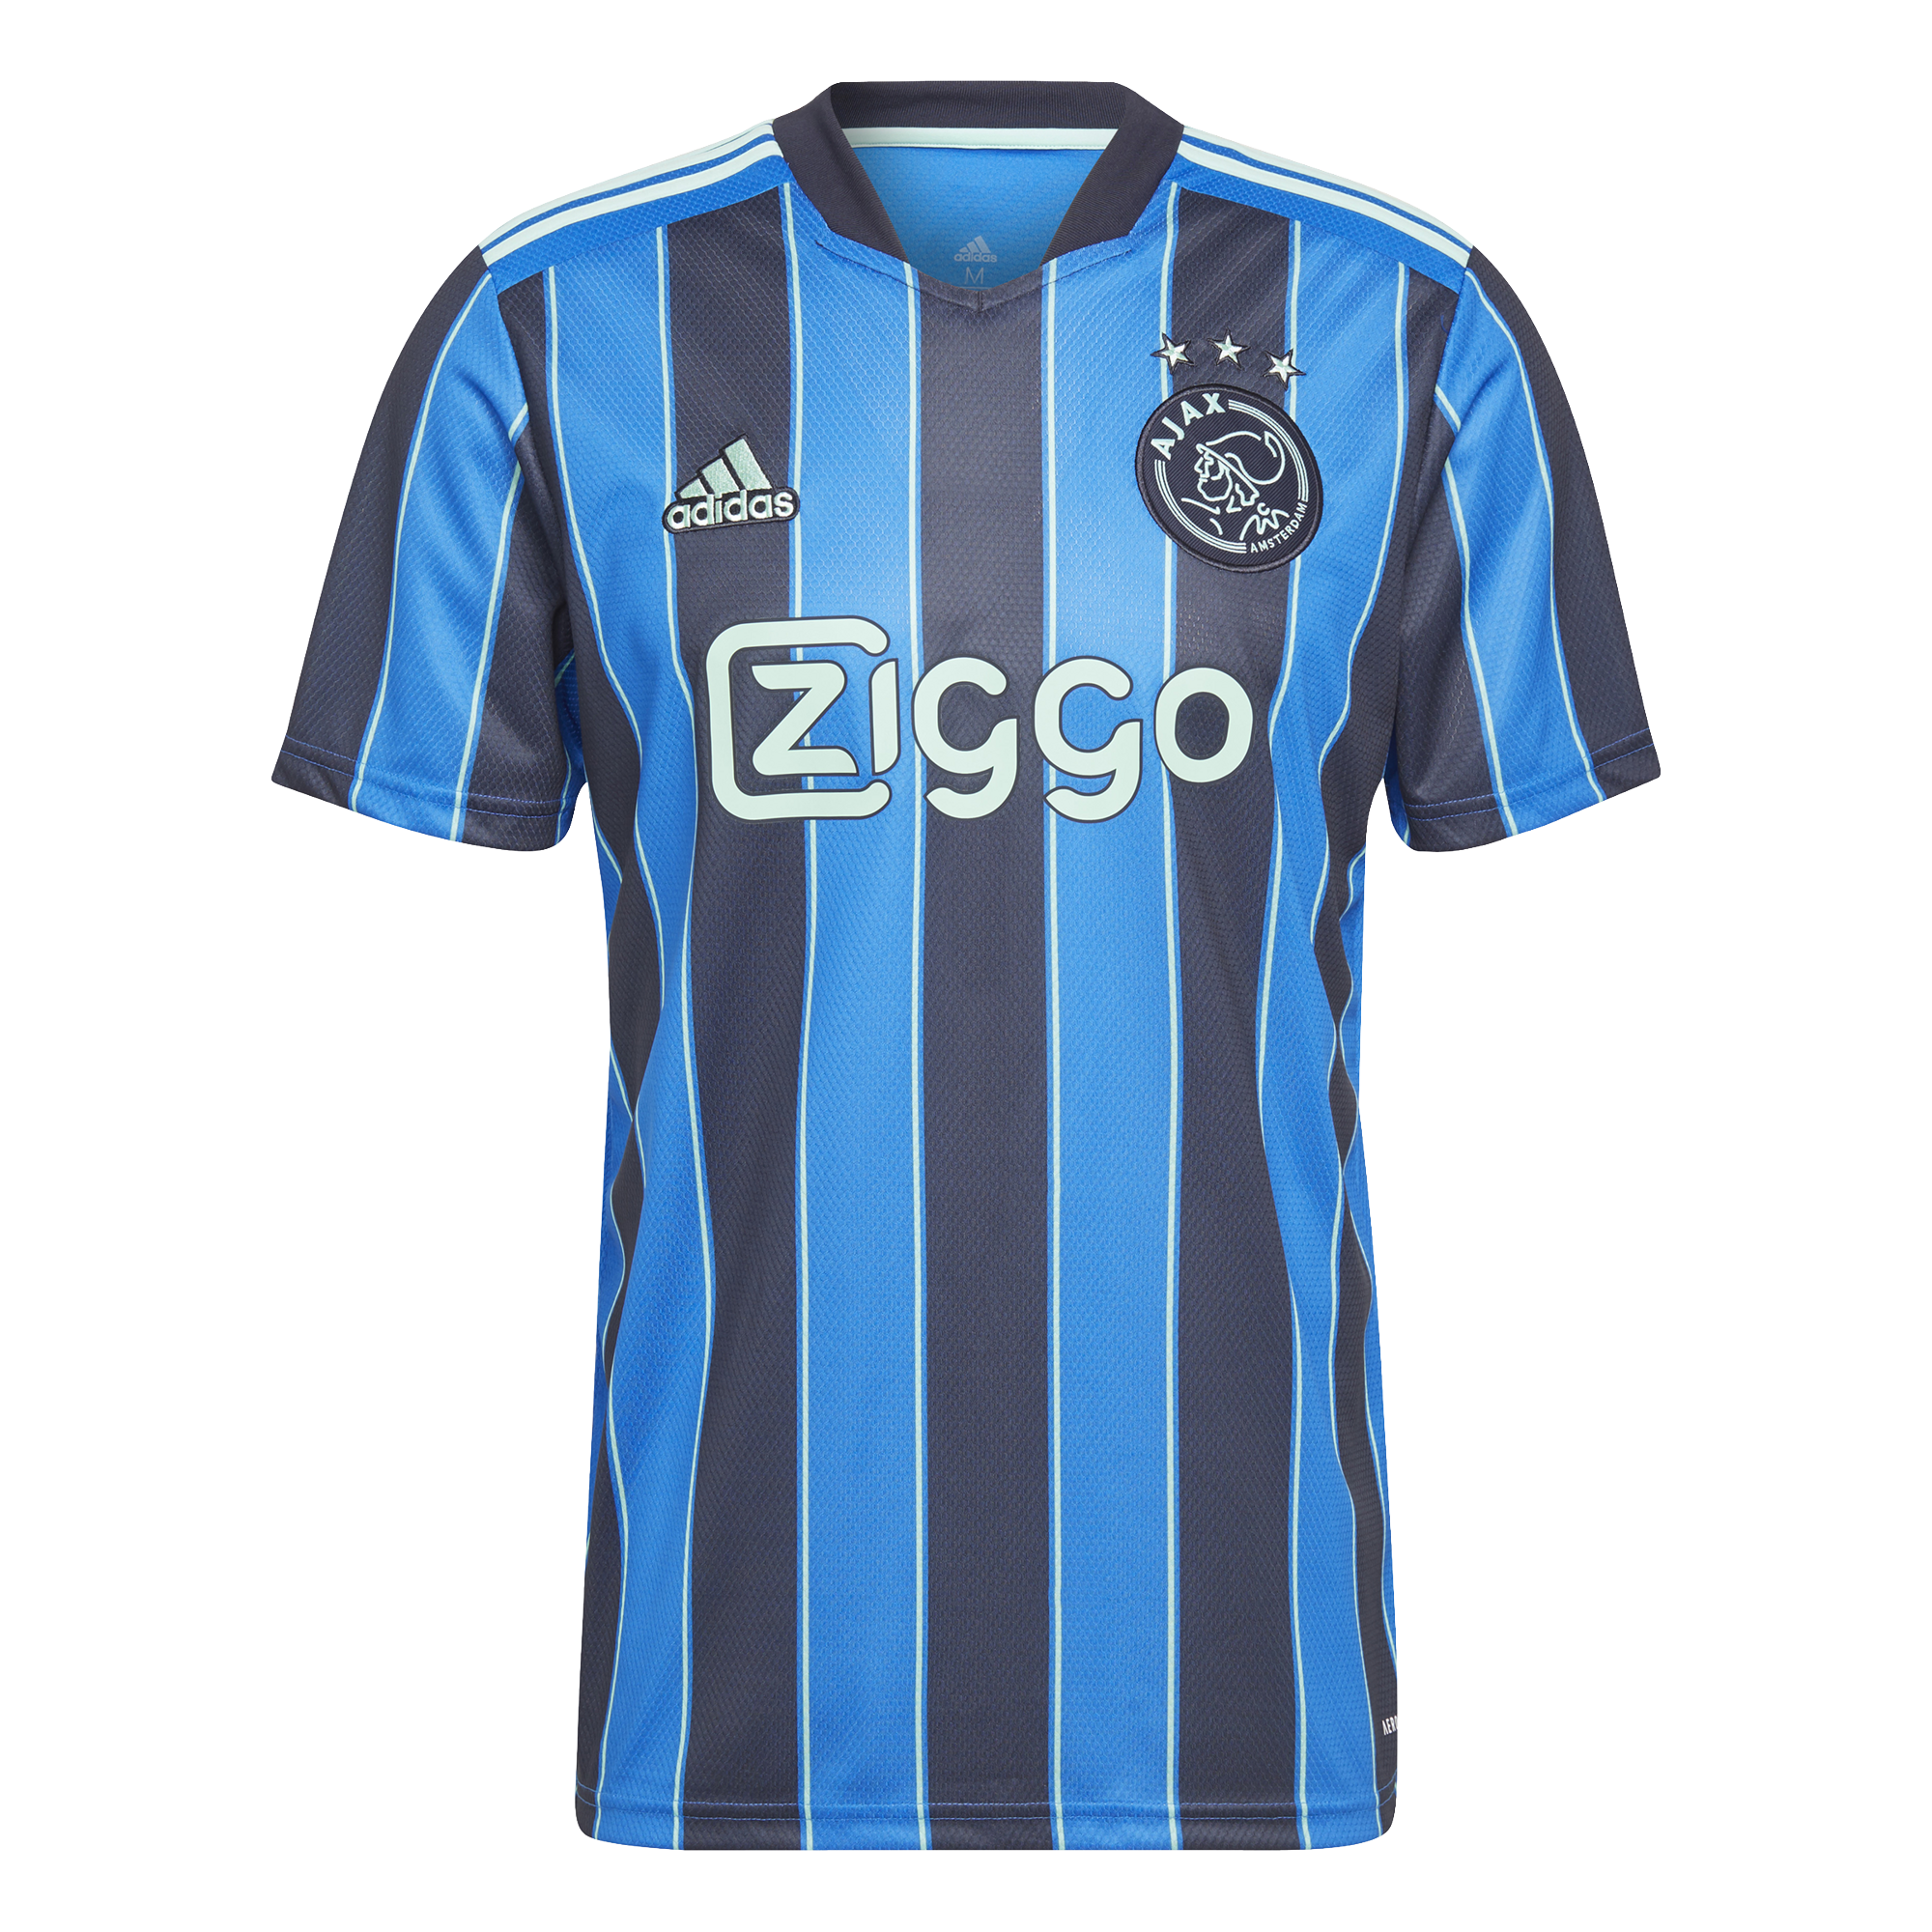 nakoming schandaal Meyella Adidas Shirt A Ajax jr - Wim Slangen Sports